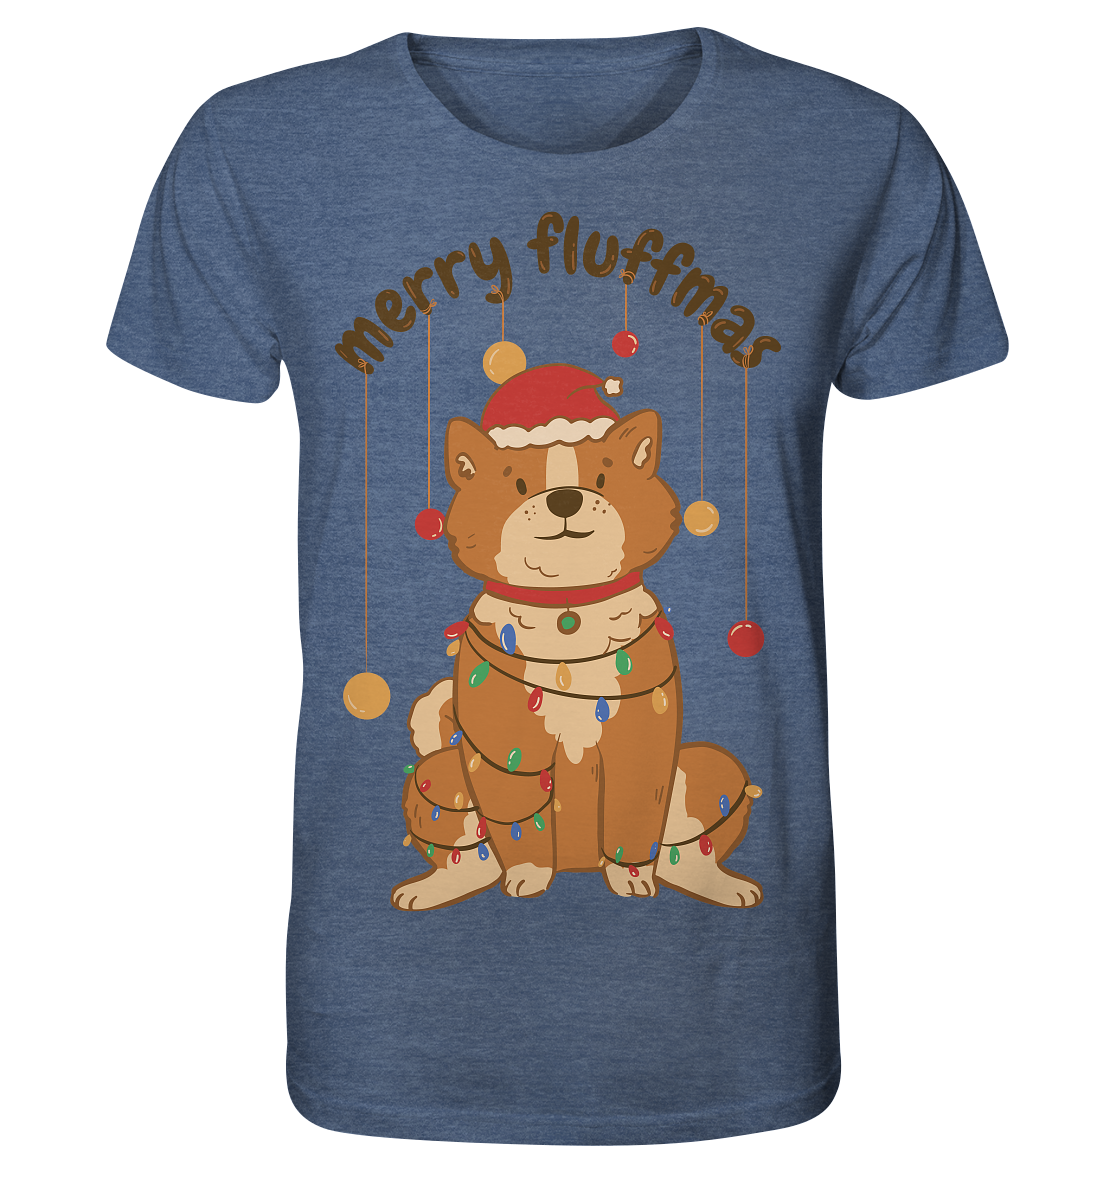 Weihnachtliches Motiv Fun Merry Fluffmas - Organic Shirt (meliert)